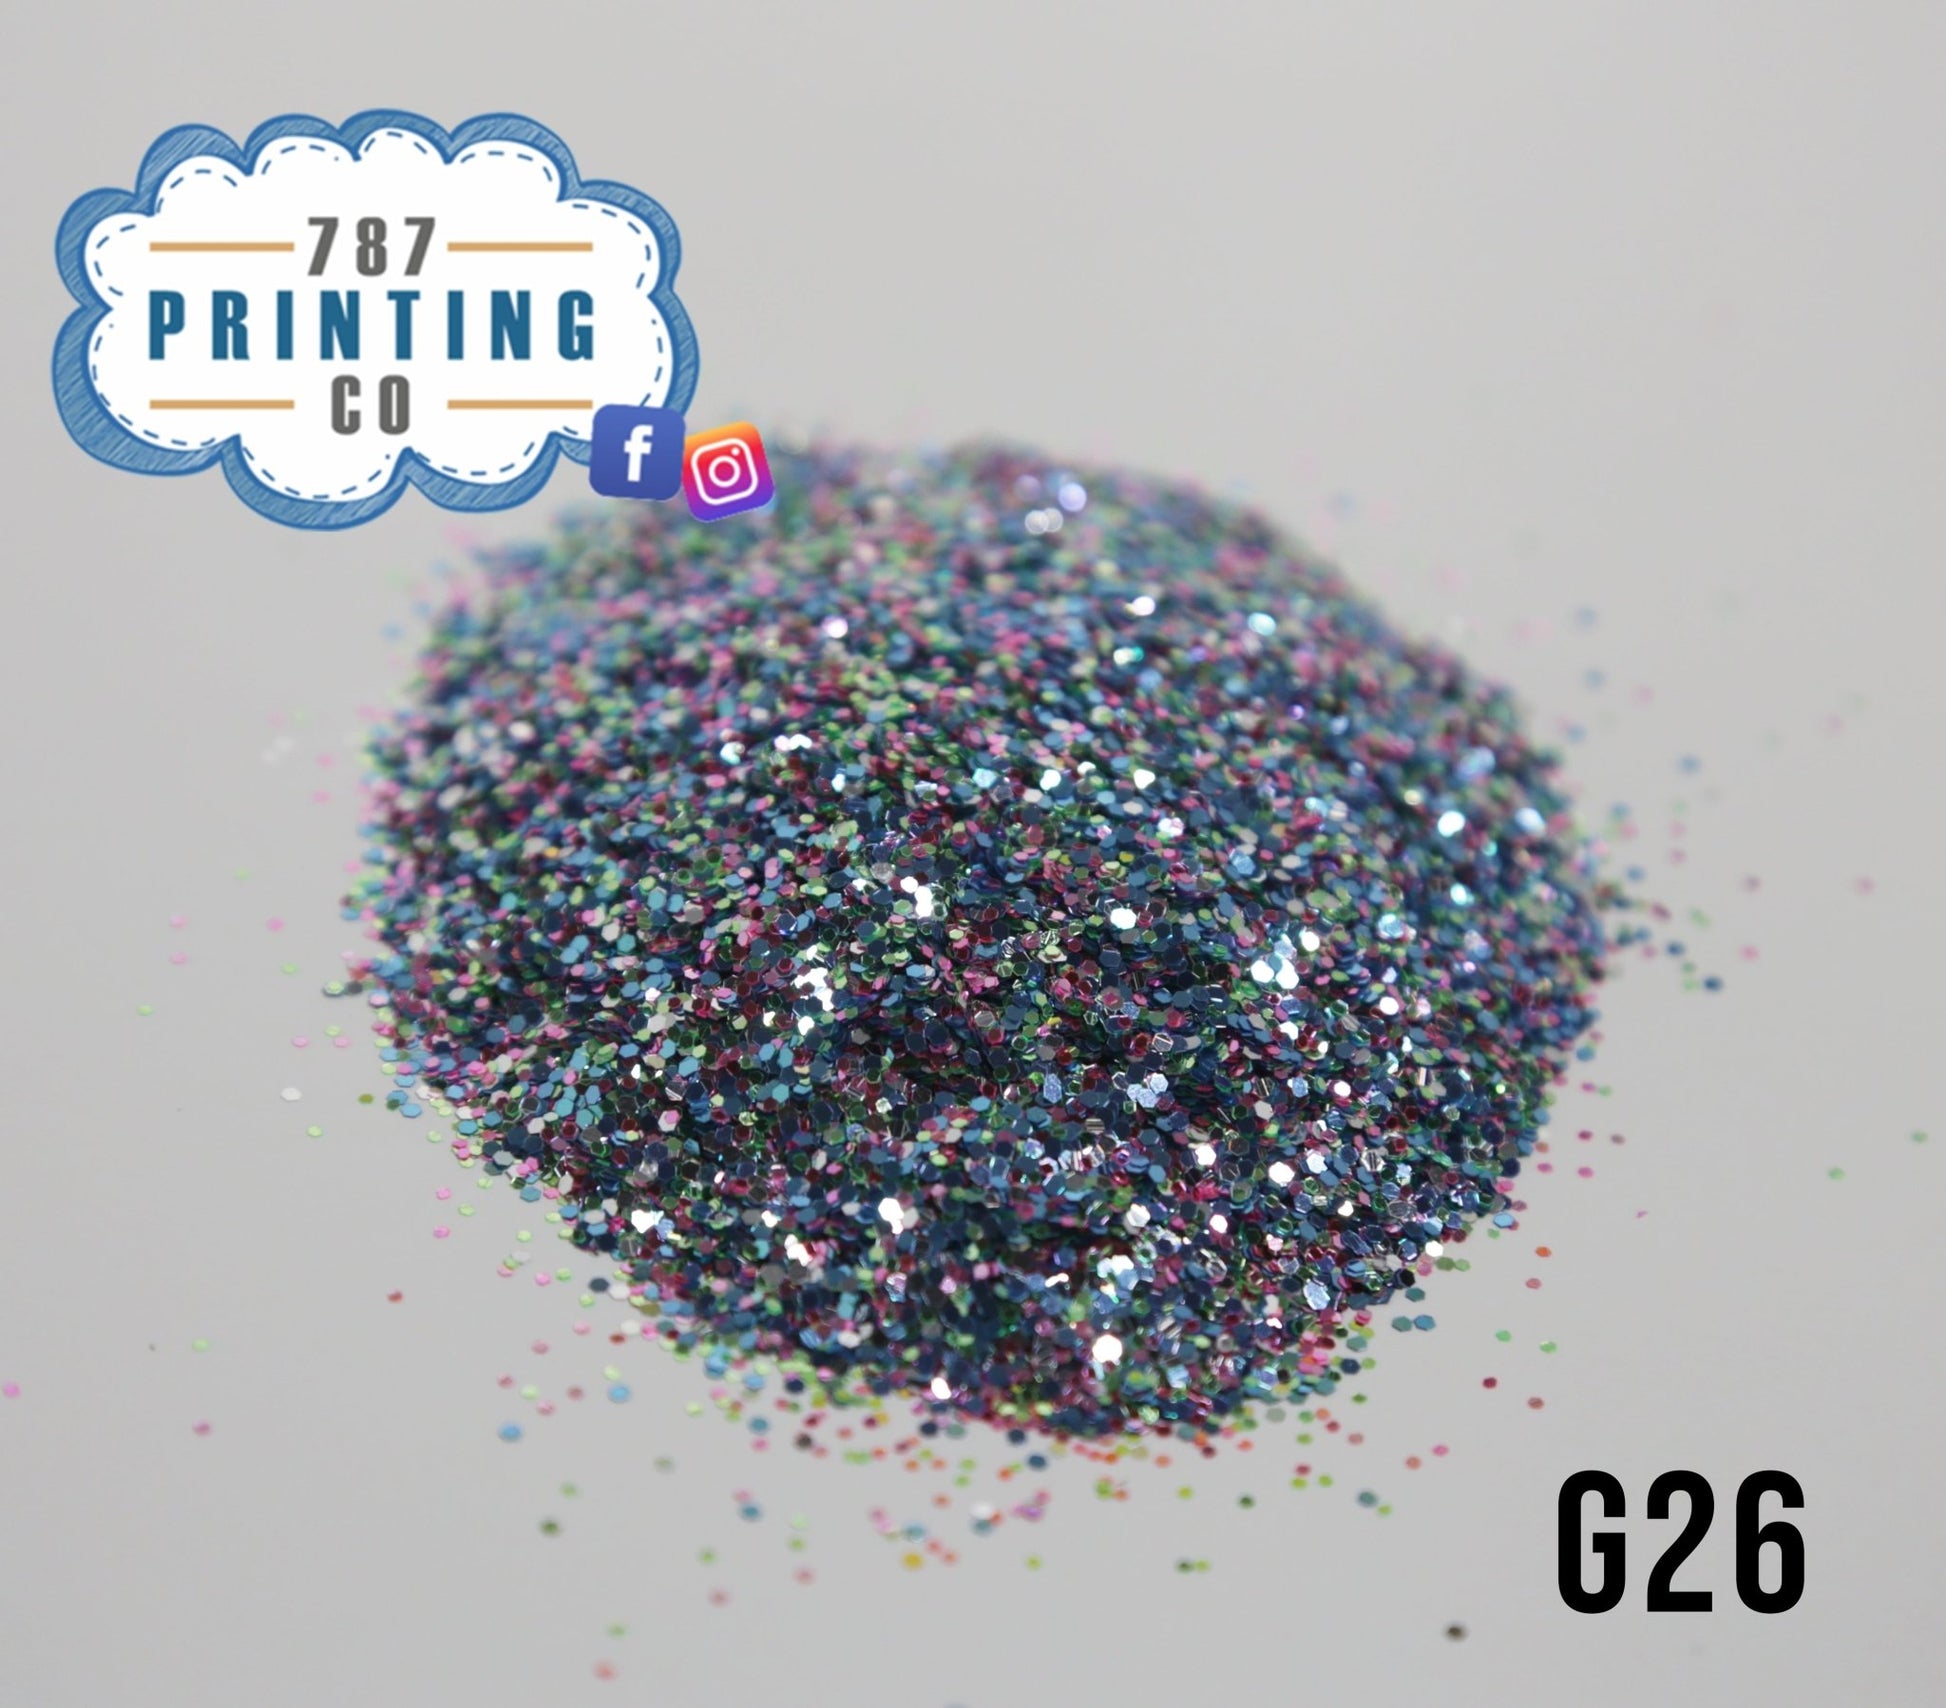 Aibonito Chunky Glitter (G26) - 787 Printing Co.